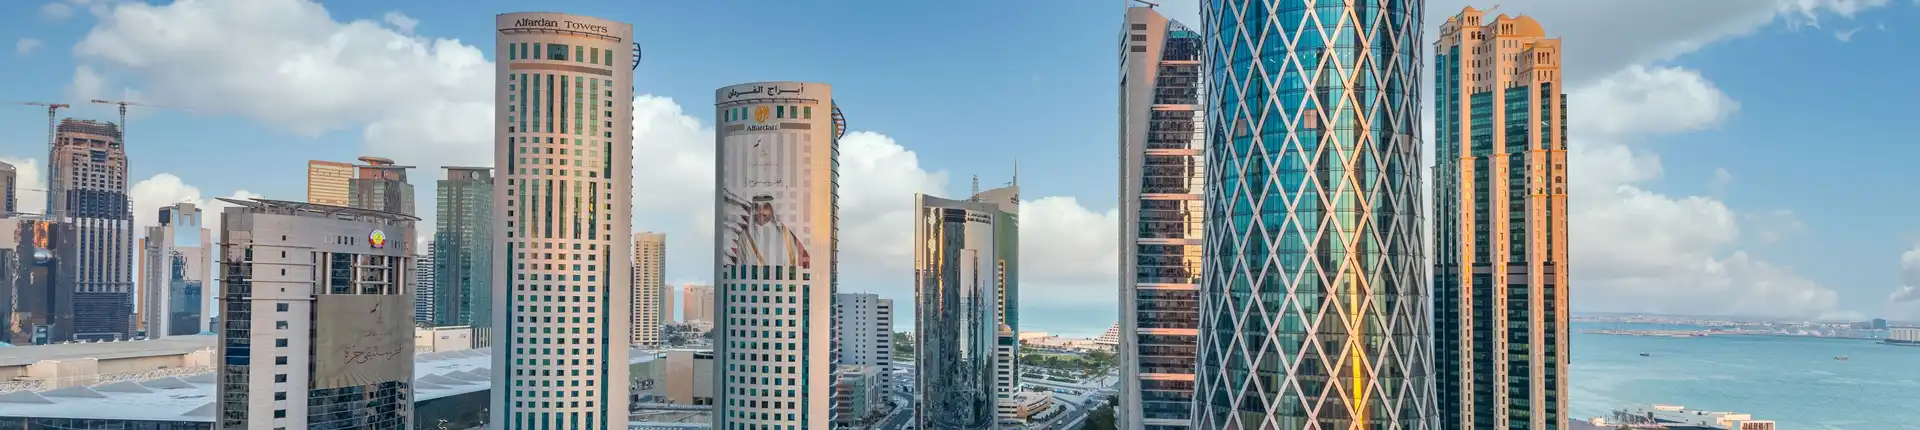 افضل 10 اماكن سياحية في الدوحة